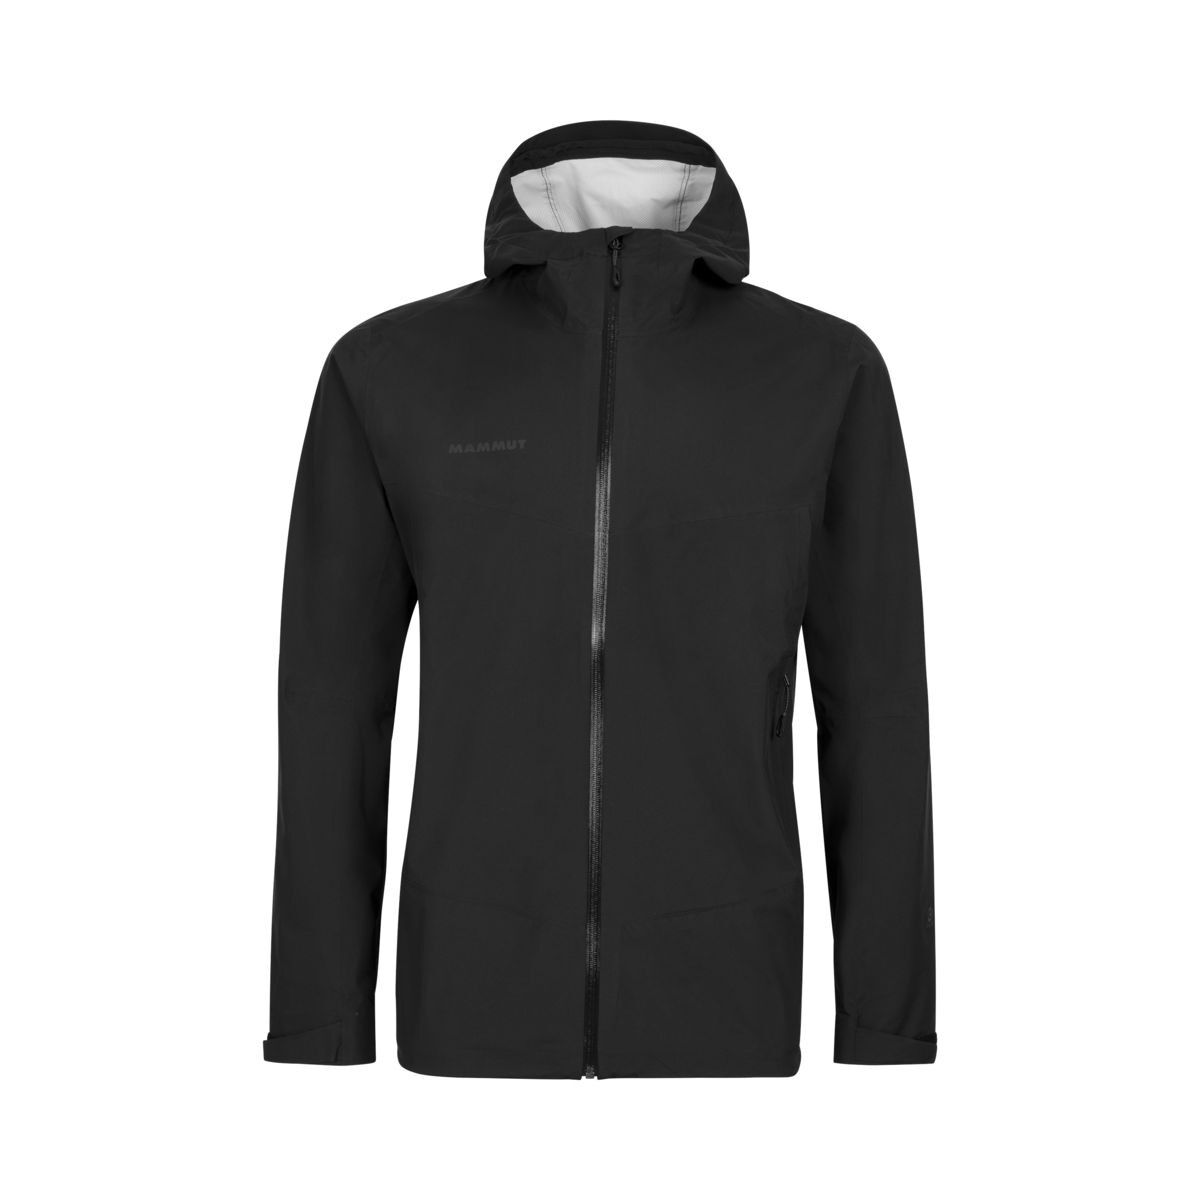 Mammut Albula HS Hooded Jacket - Hardshell jacket - Men's